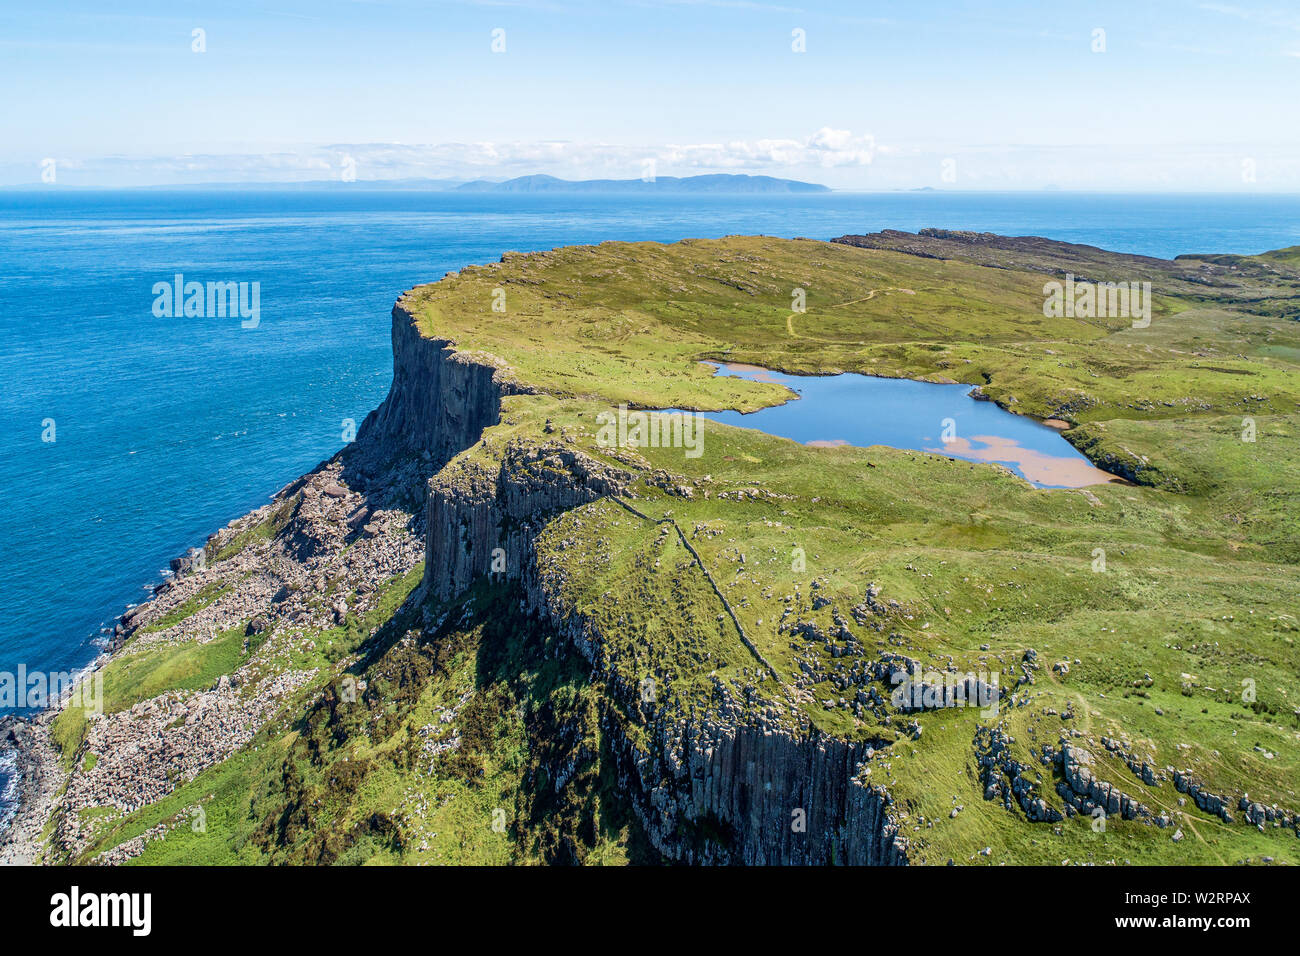 Fair Head big Cliff und landspitze an der nord-östlichen Ecke der Grafschaft Antrim, Nordirland, Großbritannien. Luftbild mit Atlantik und einem See. Stockfoto